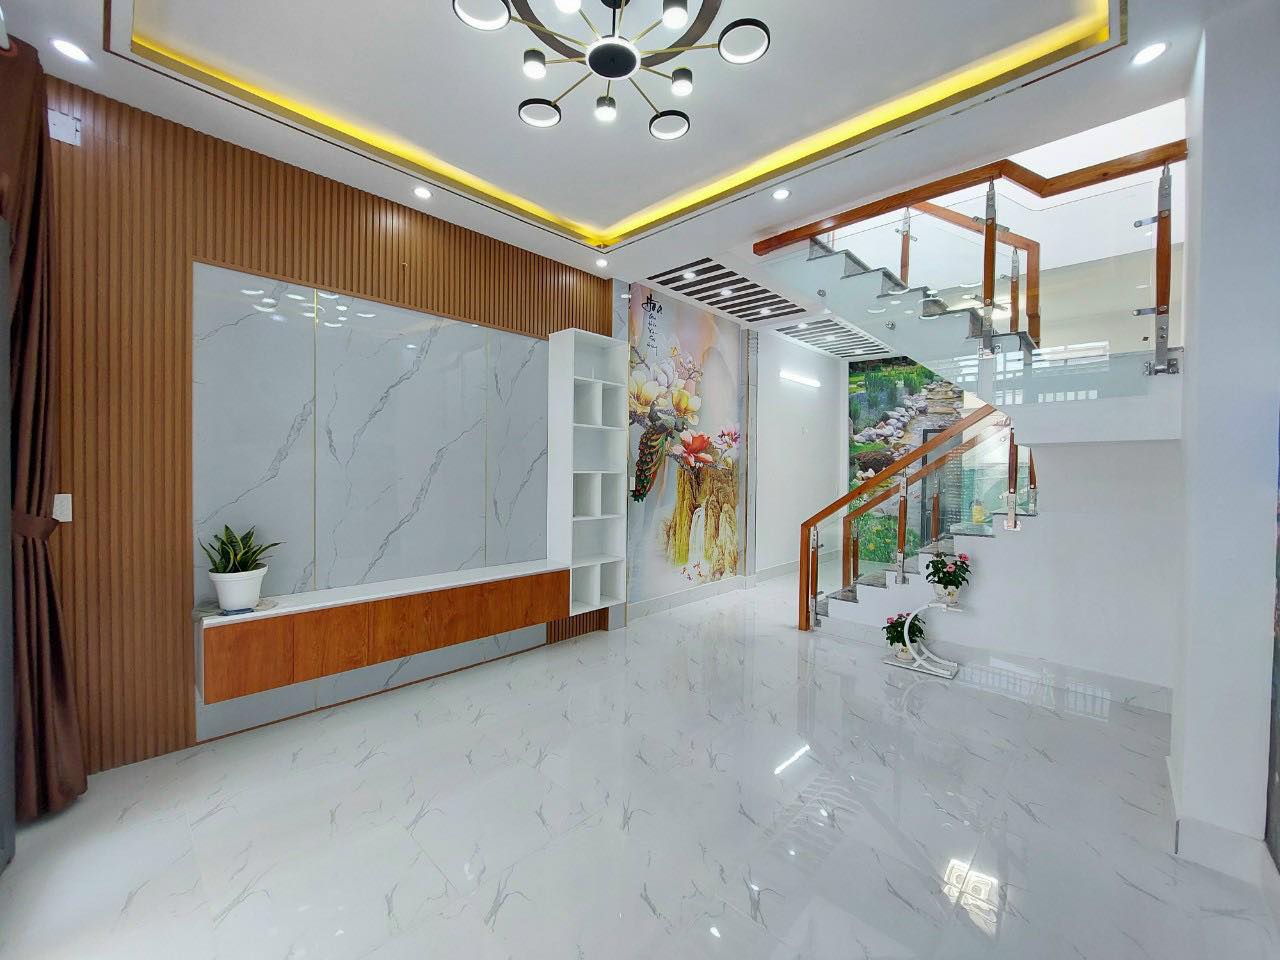 Bán nhà mới xây Hà Huy Giáp Thạnh Xuân quận 12 giá 4,8 tỷ bao thuế phí